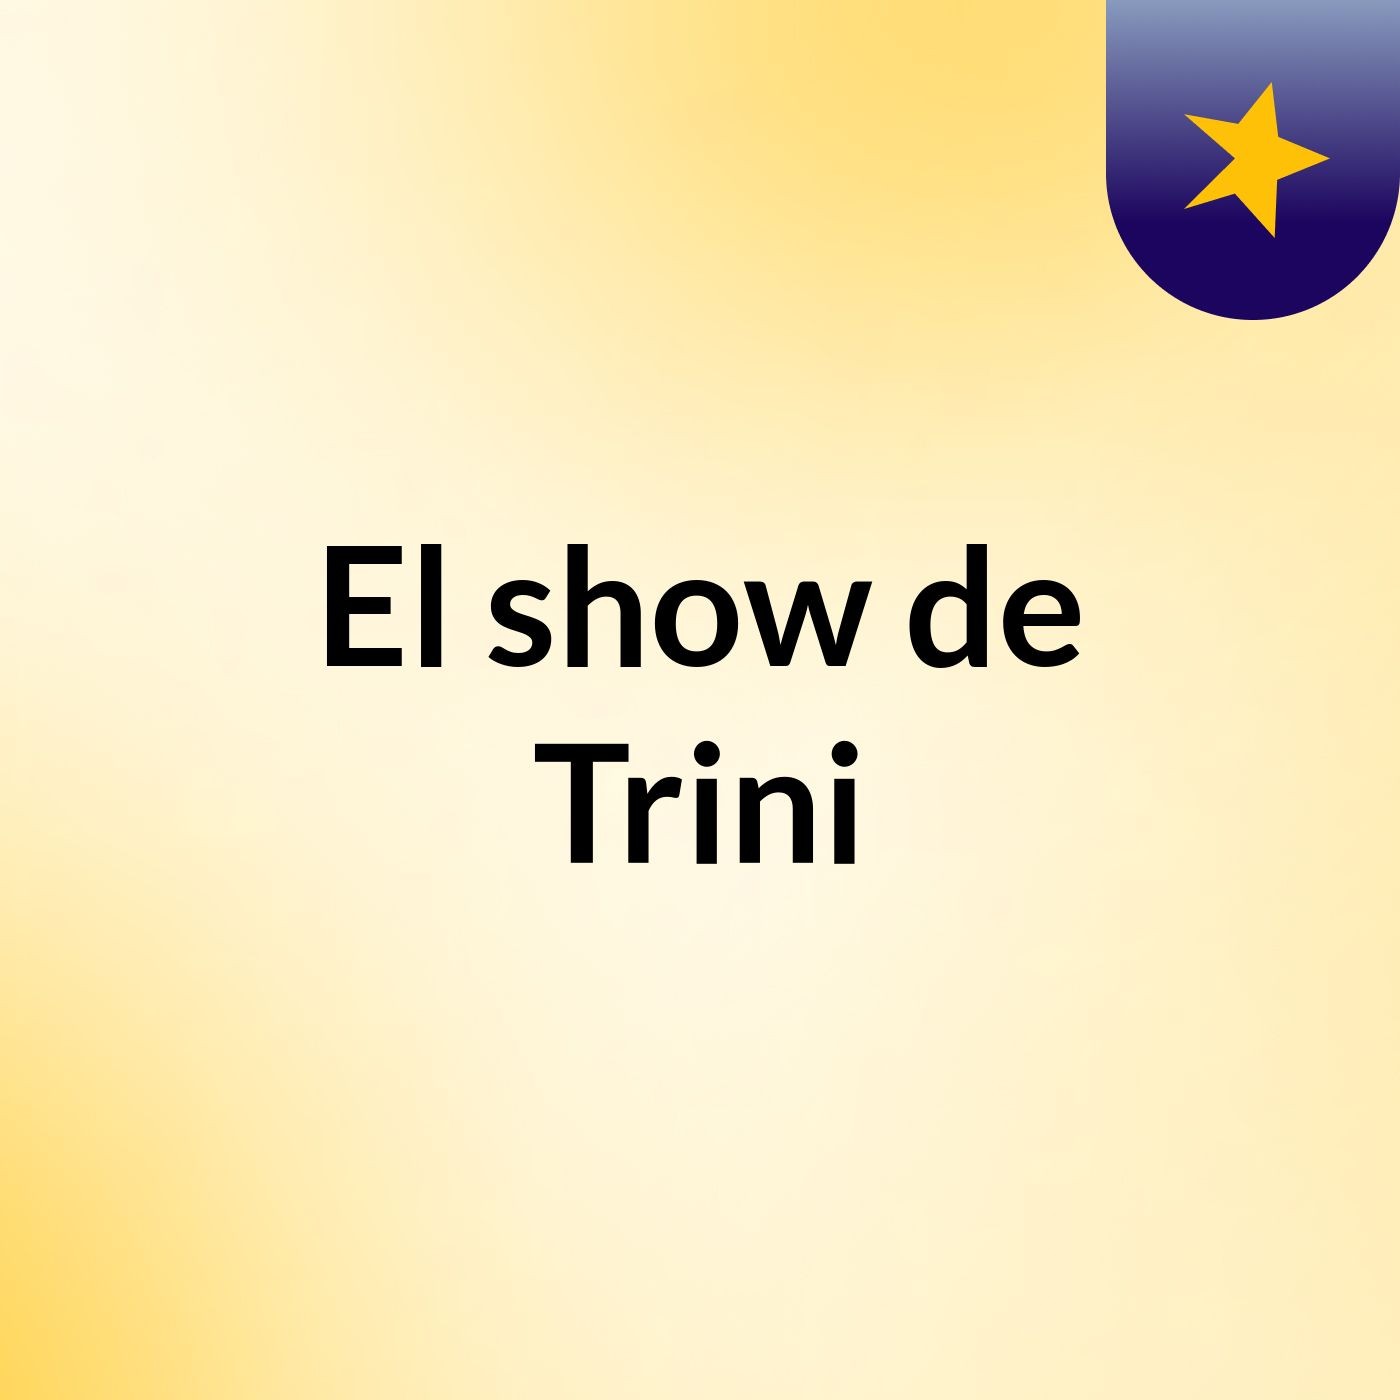 El show de Trini